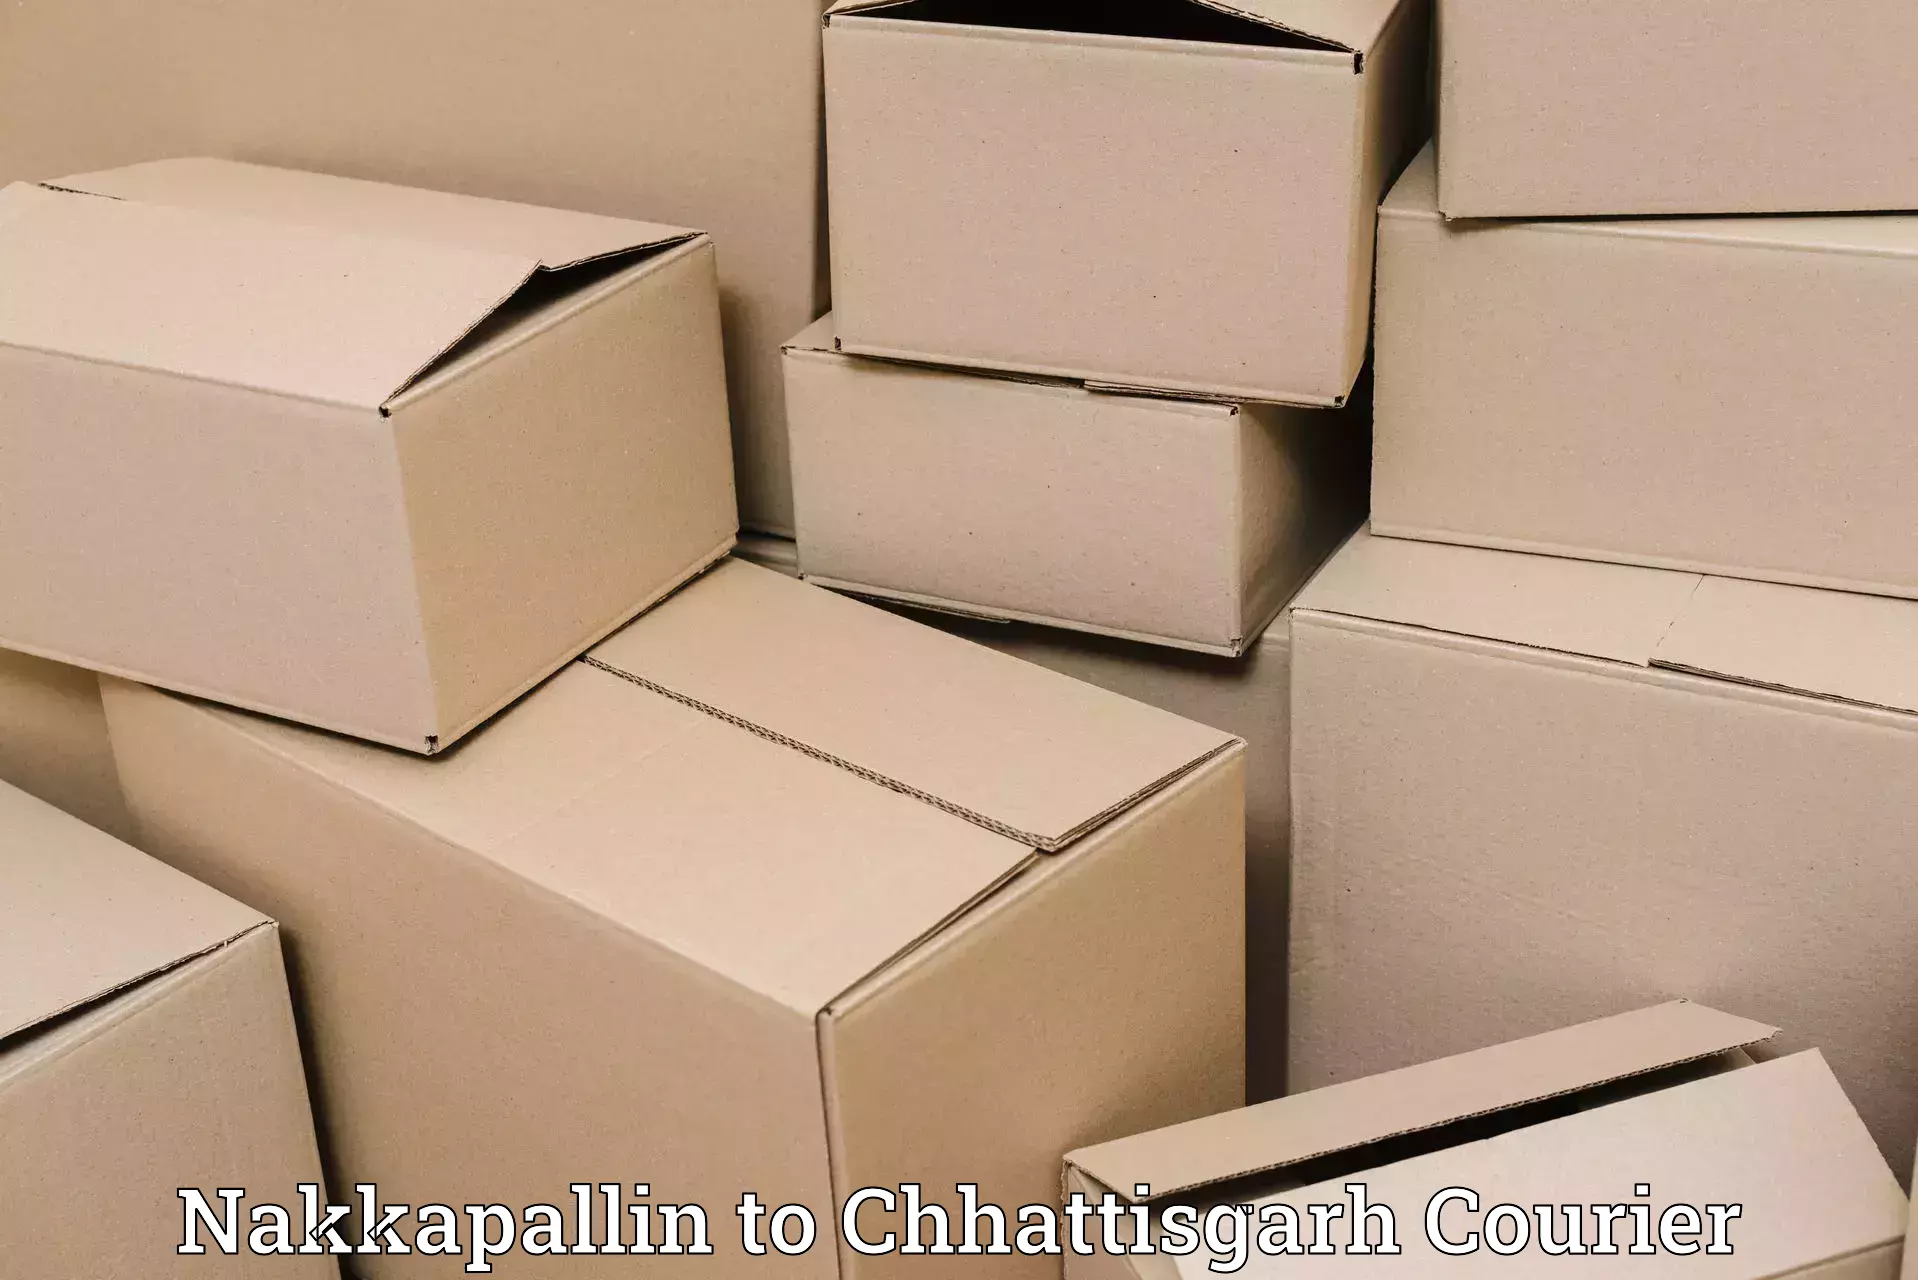 Customer-centric shipping in Nakkapallin to Chhattisgarh